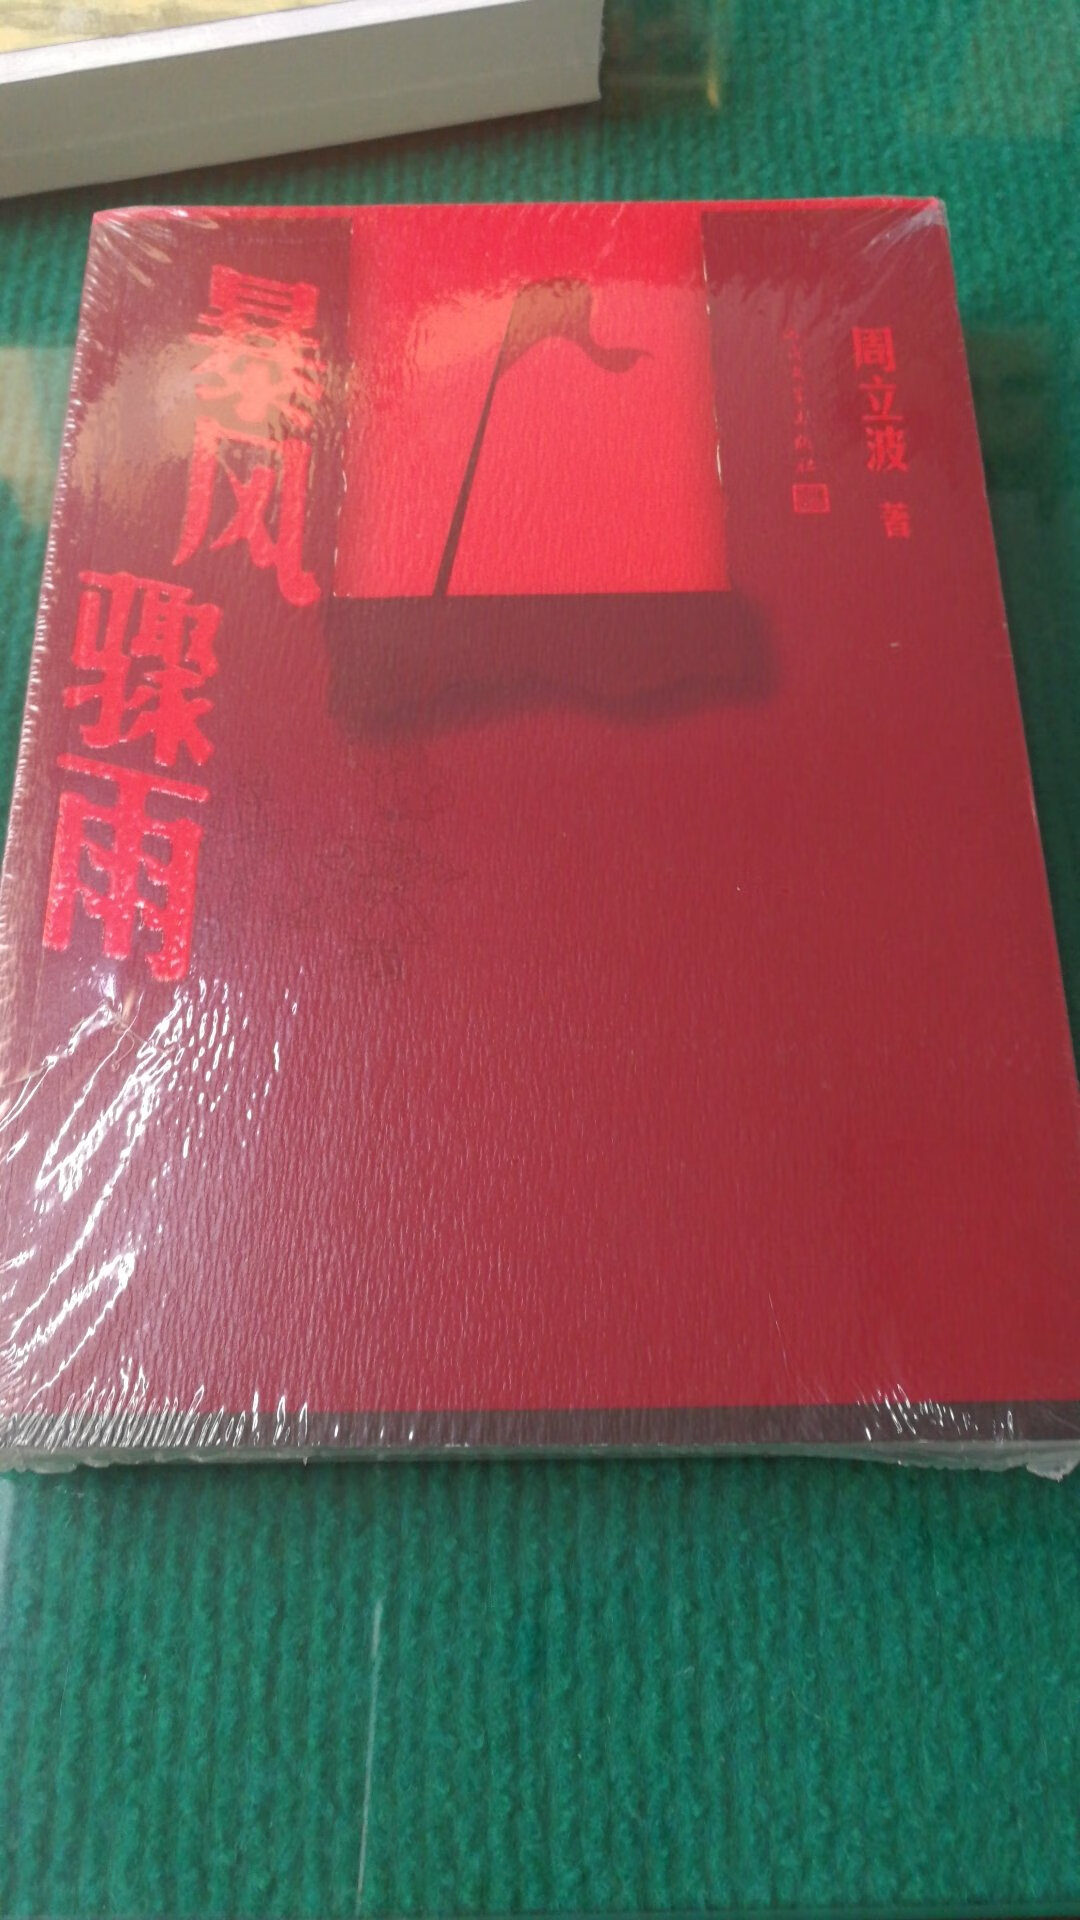 中国现代文学经典之作周立波的代表作。。。。。